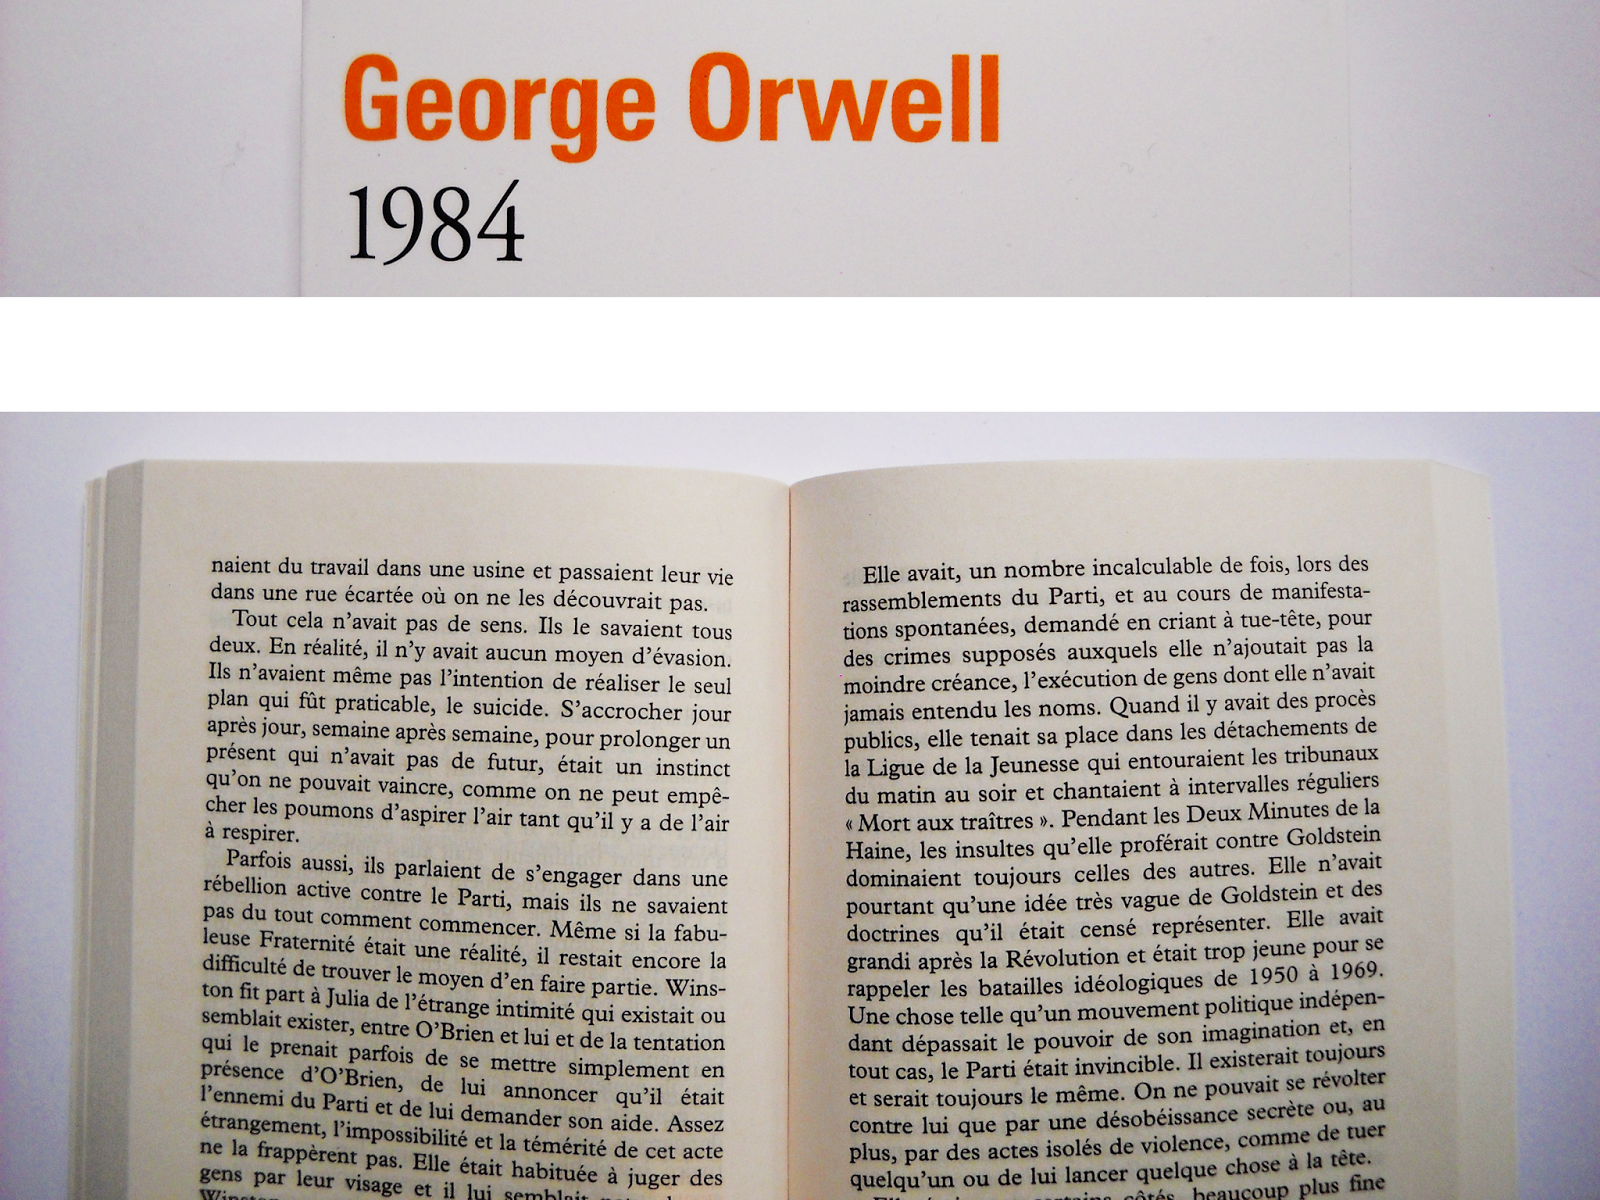 1984 [George Orwell]